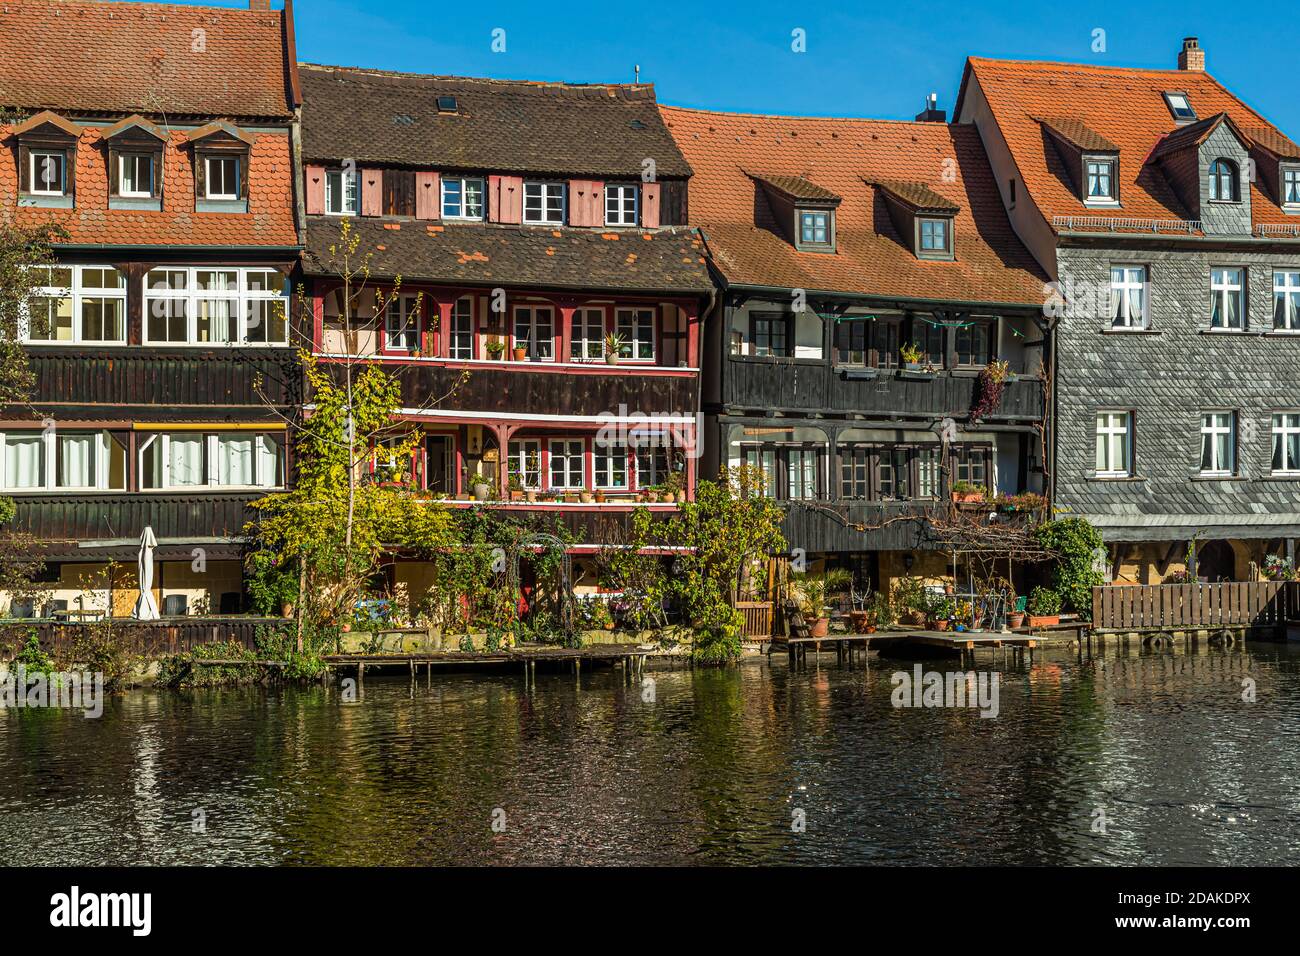 The Pregniz River in Bamberg, Germany Stock Photo